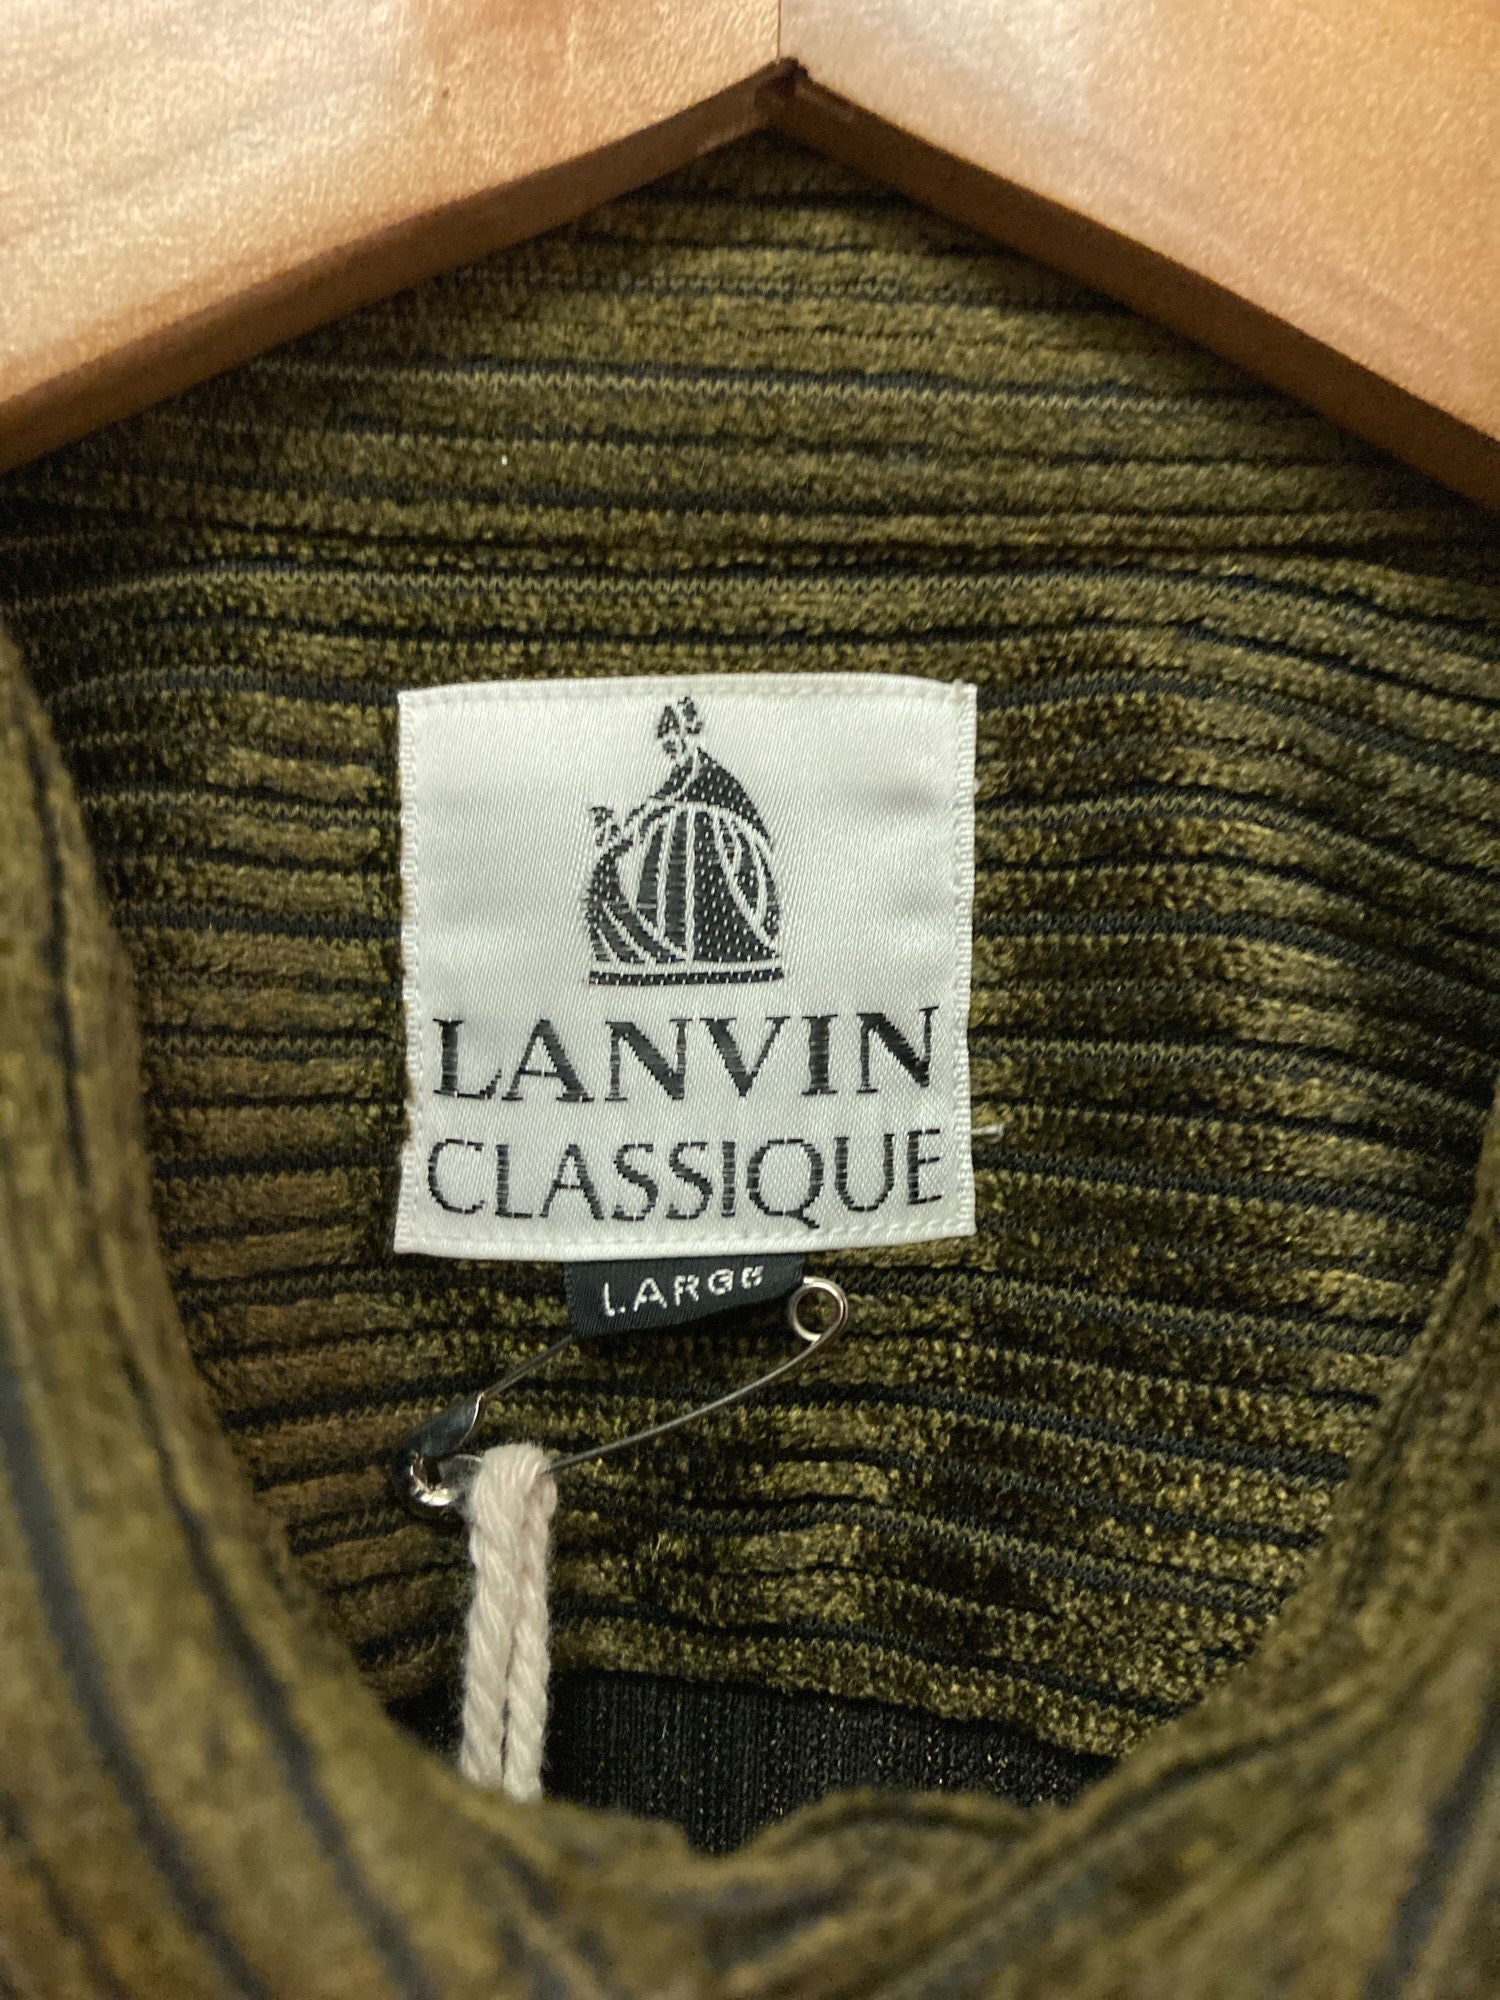 Lanvin classique gold / brown polyester corduroy shirt - mens L M